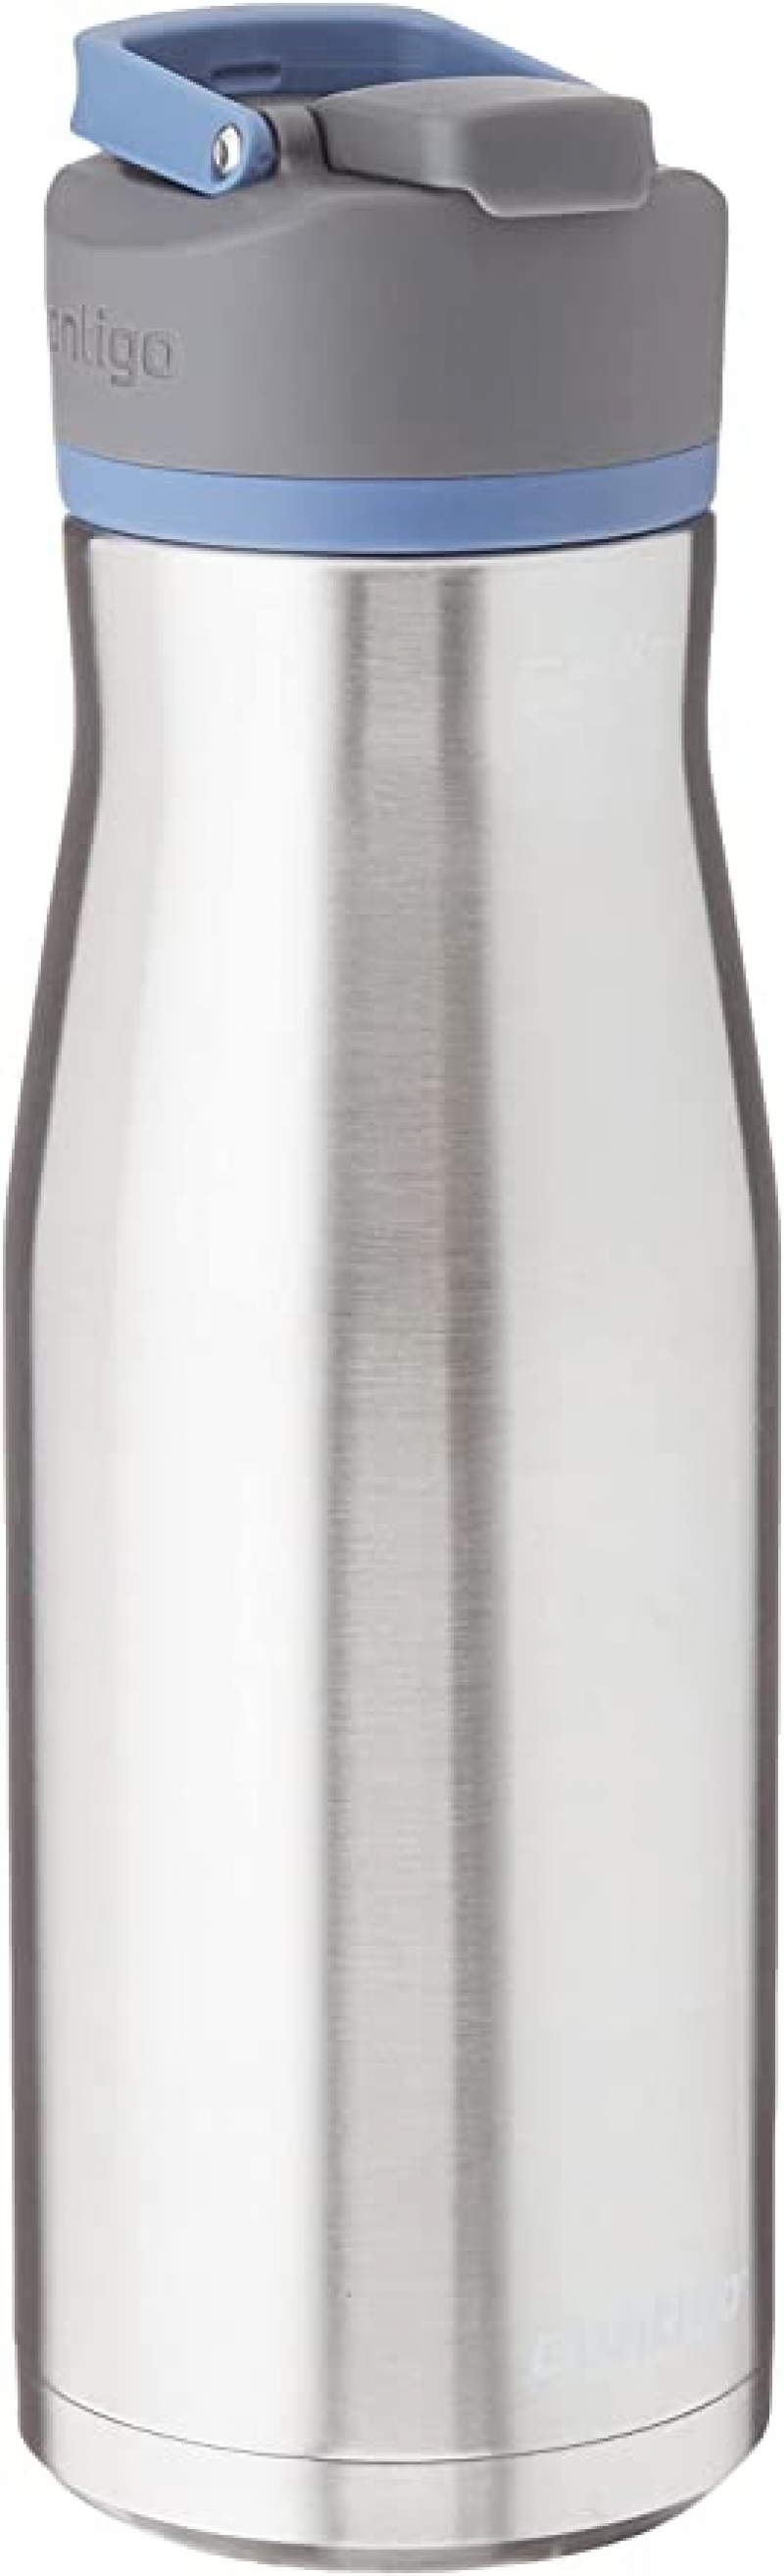 ihocon: Contigo AUTOSEAL Water Bottle, 32oz 保温水瓶